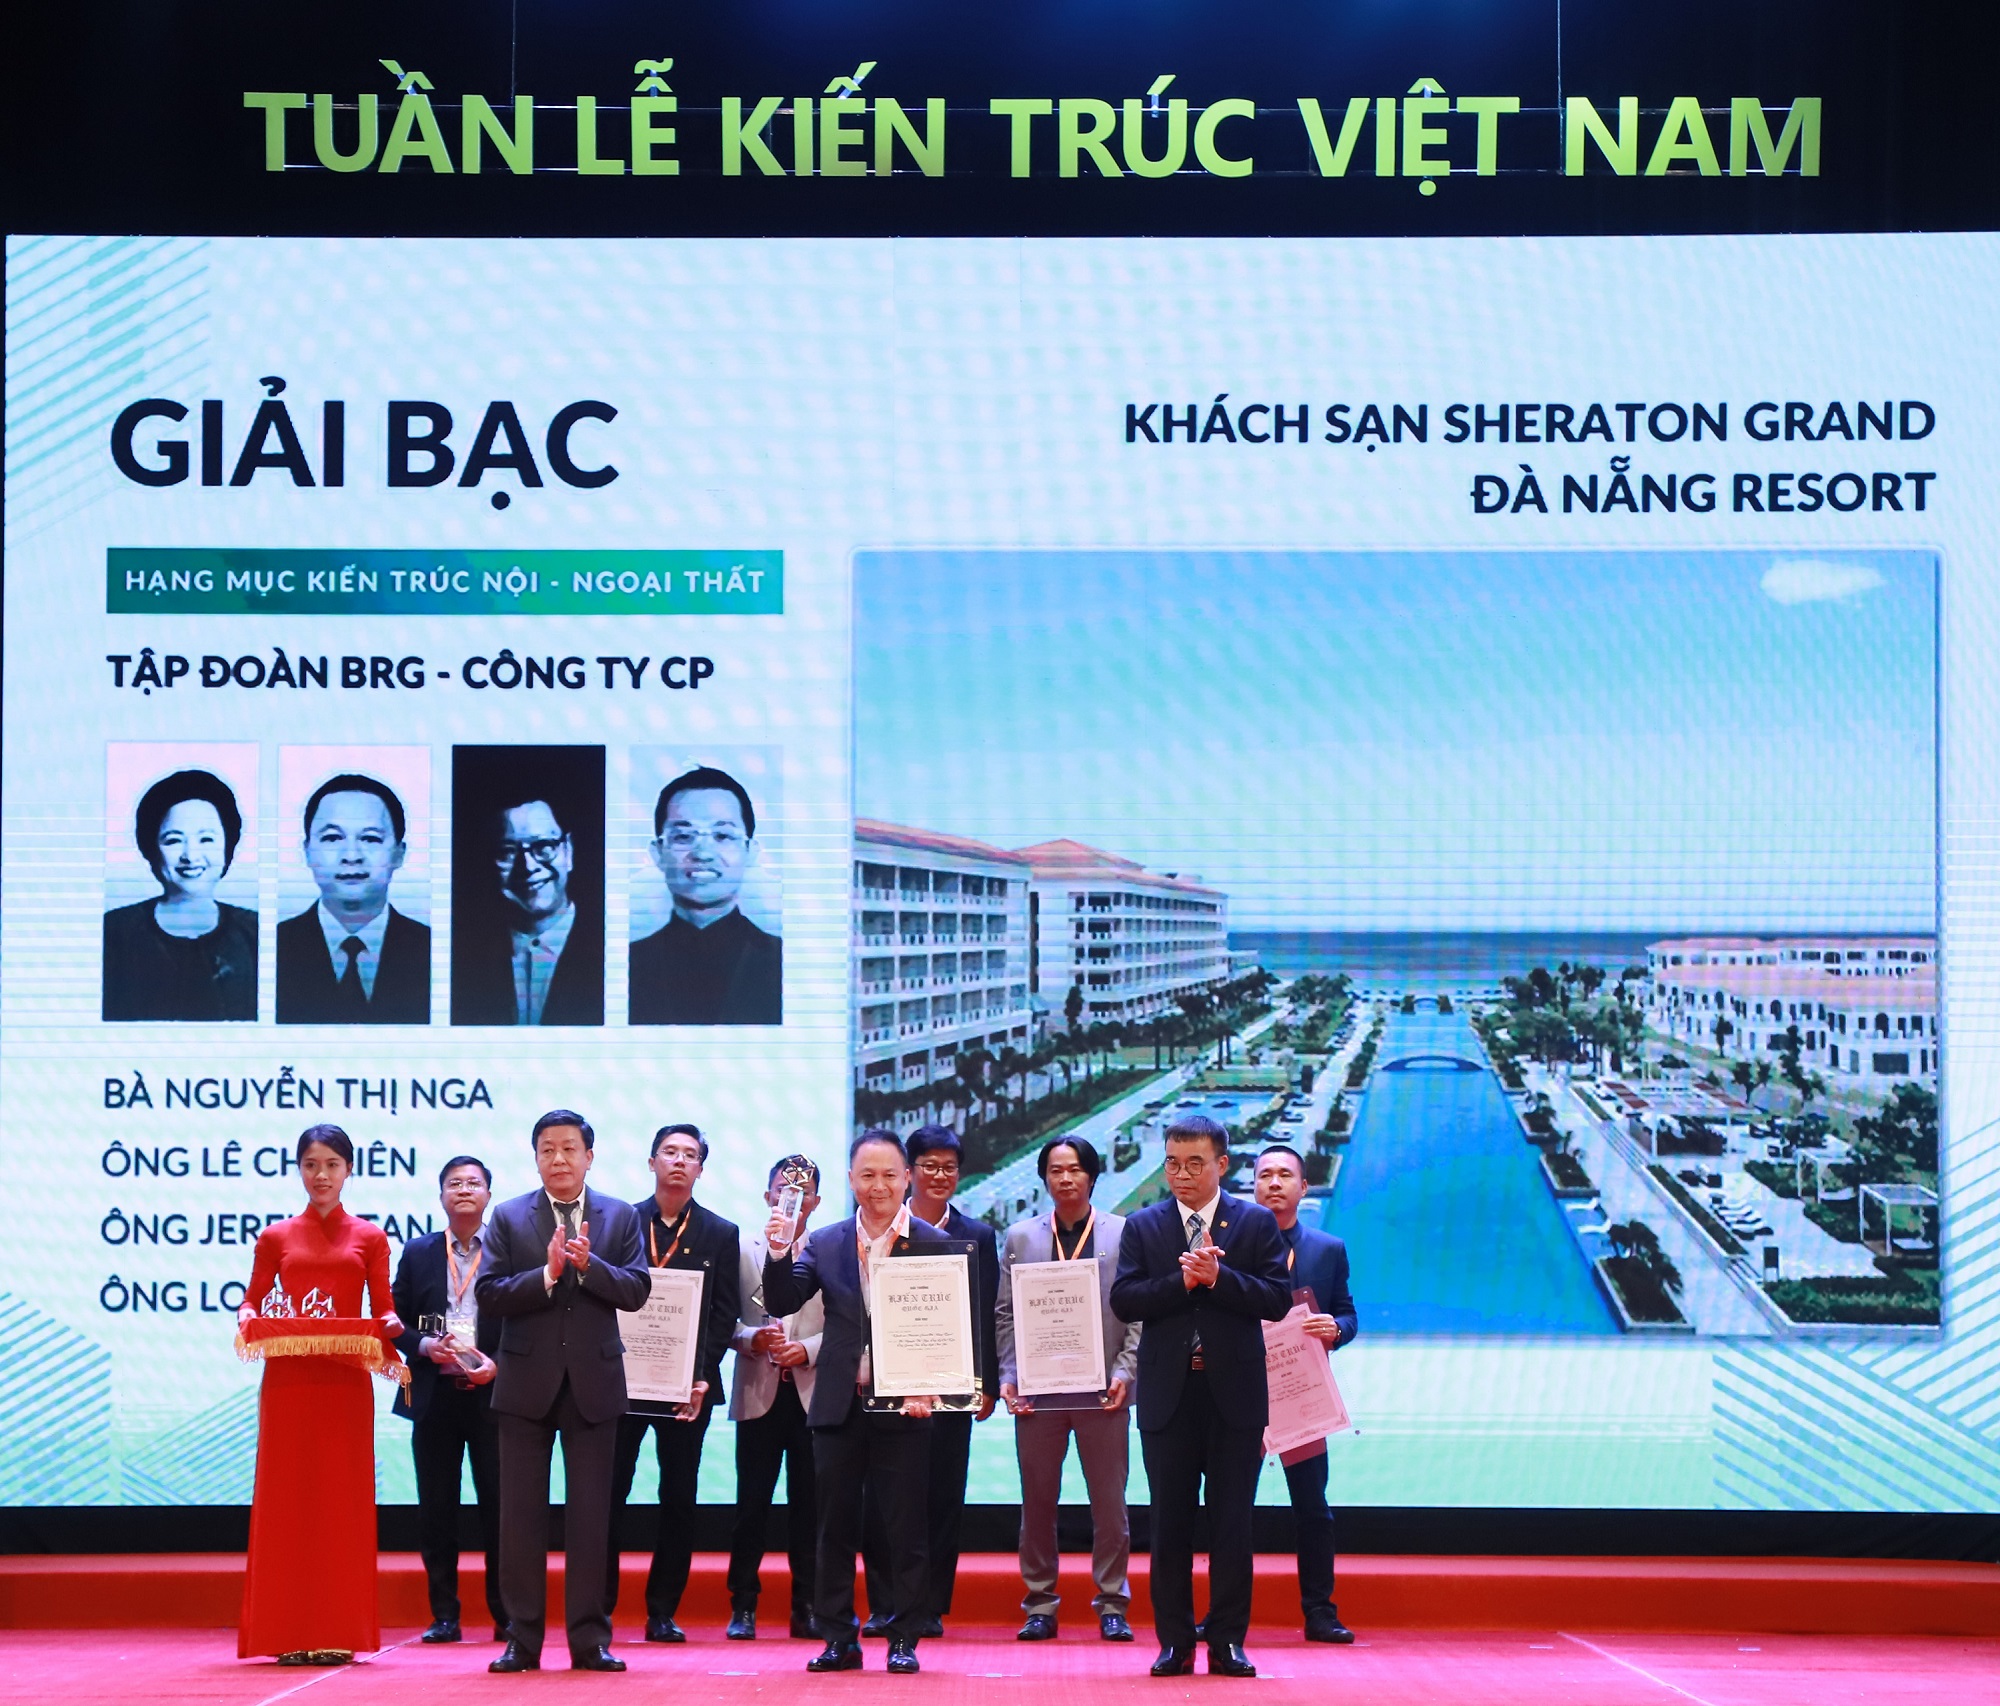 Đại diện Tập đoàn BRG nhận giải thưởng “Kiến trúc nội – ngoại thất”  cho tổ hợp Khách sạn Sheraton Grand Đà Nẵng Resort